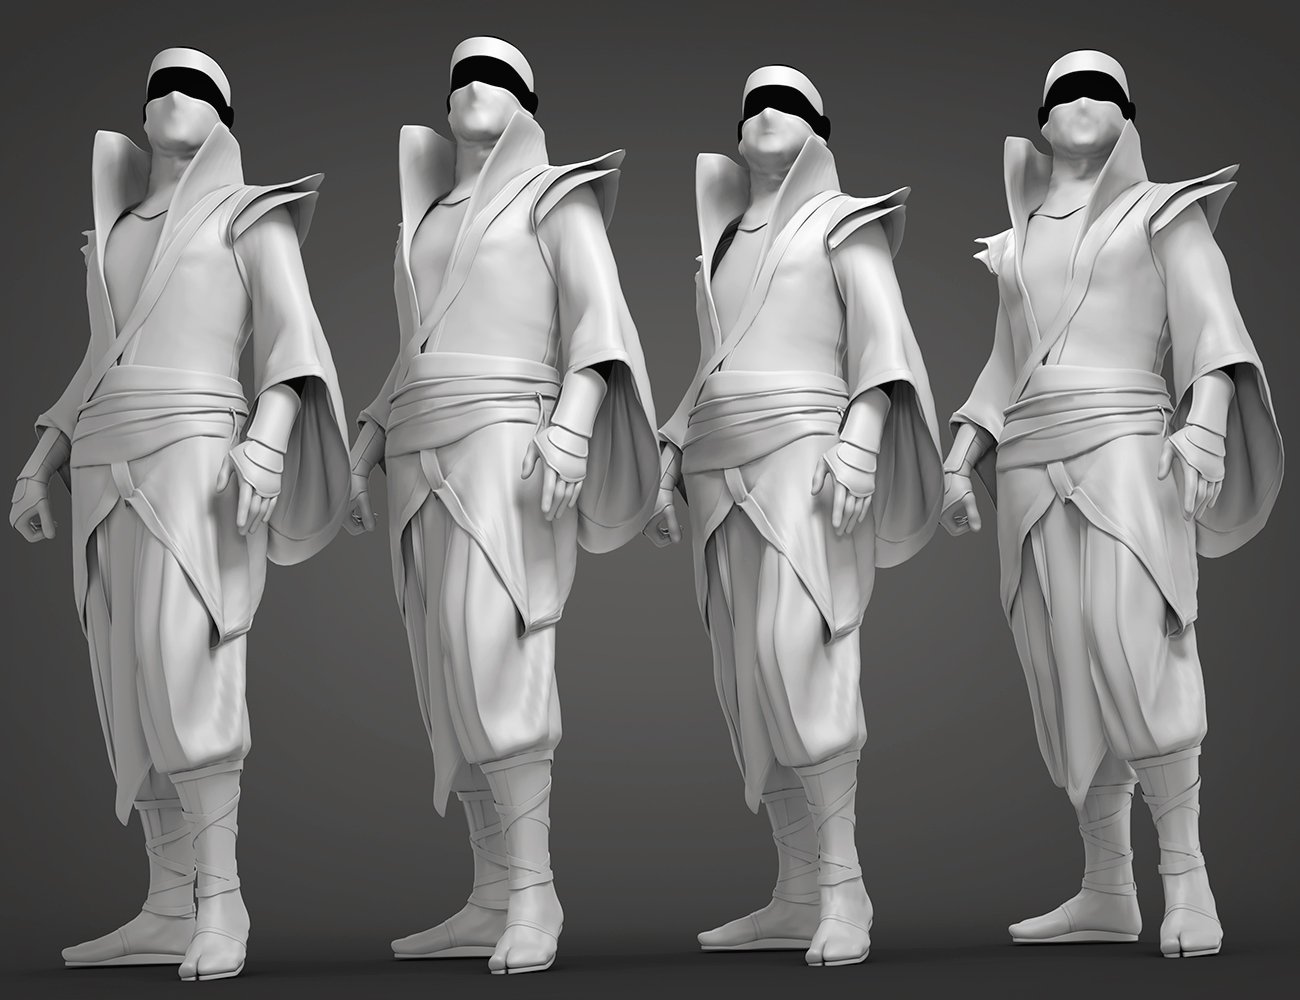 dForce Torikku Outfit for Genesis 8.1 Male by: Arki, 3D Models by Daz 3D